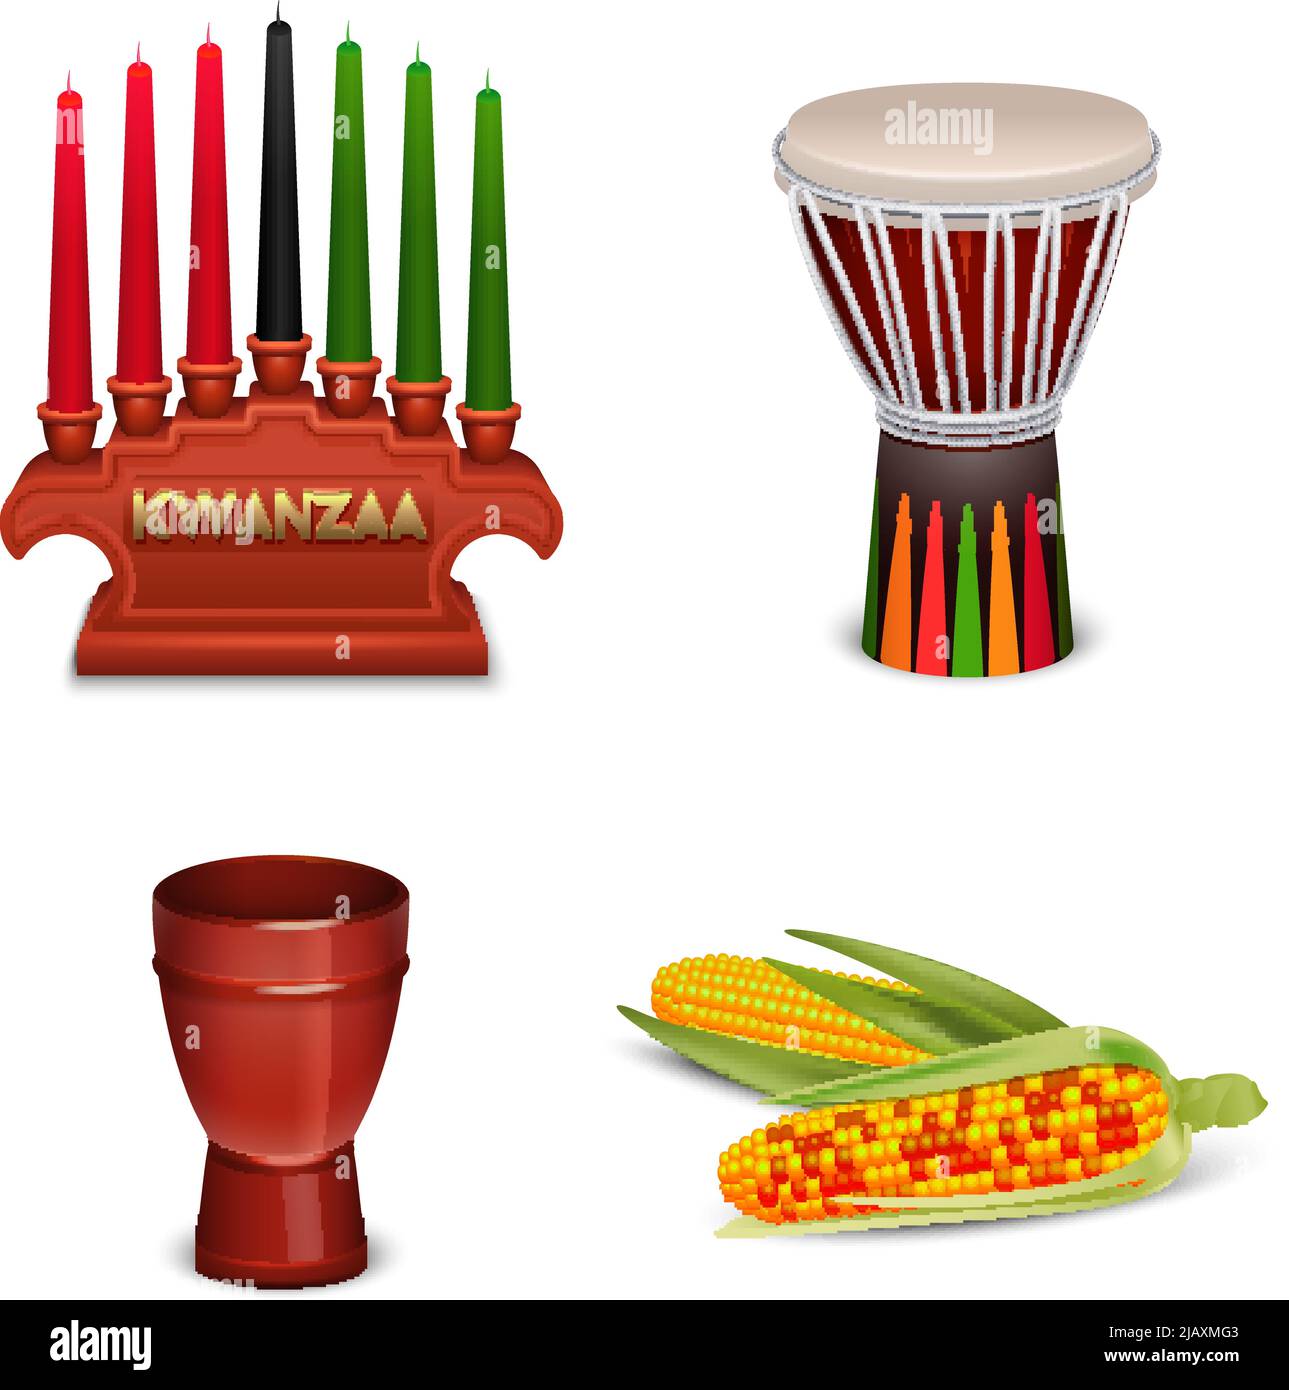 Kwanzaa festa celebrazioni 4 simboli culturali di base composizione quadrata con mais e portacandele isolato illustrazione vettoriale Illustrazione Vettoriale